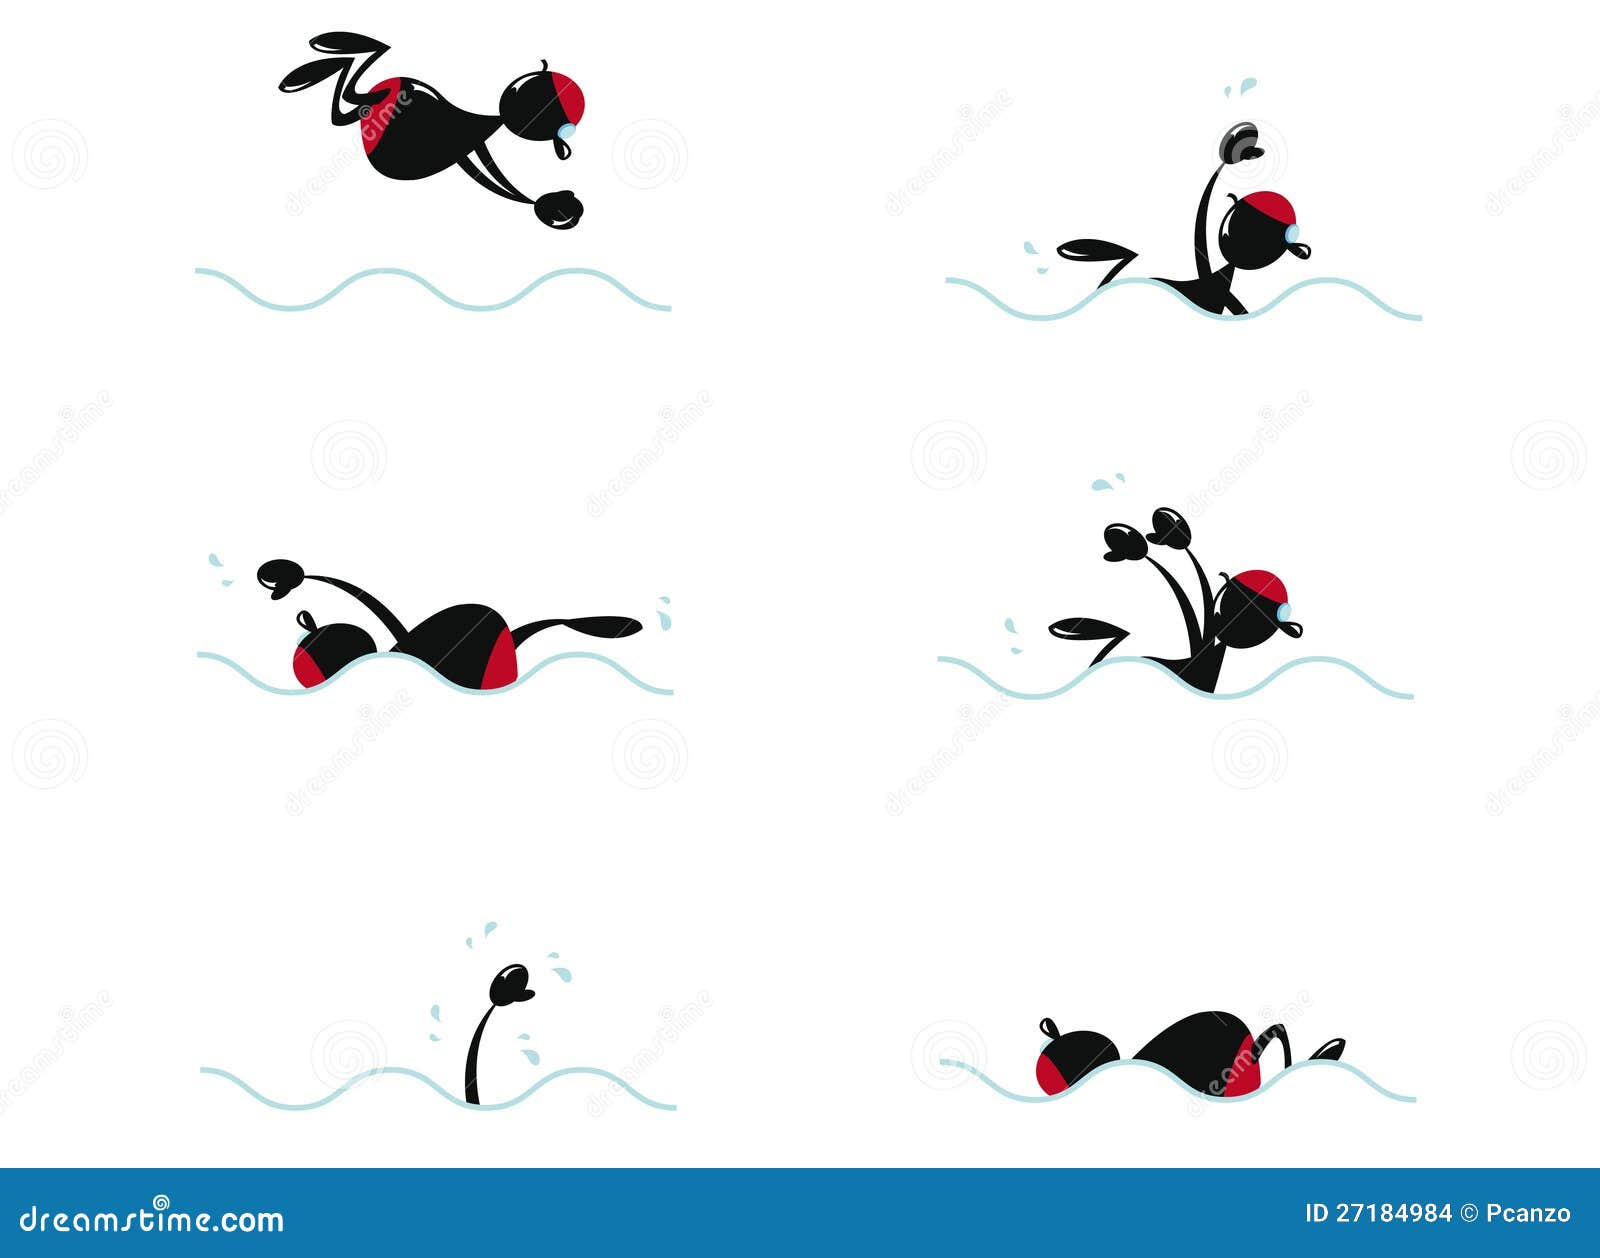 Nuoto divertente dell'uomo illustrazione vettoriale. Illustrazione di ...